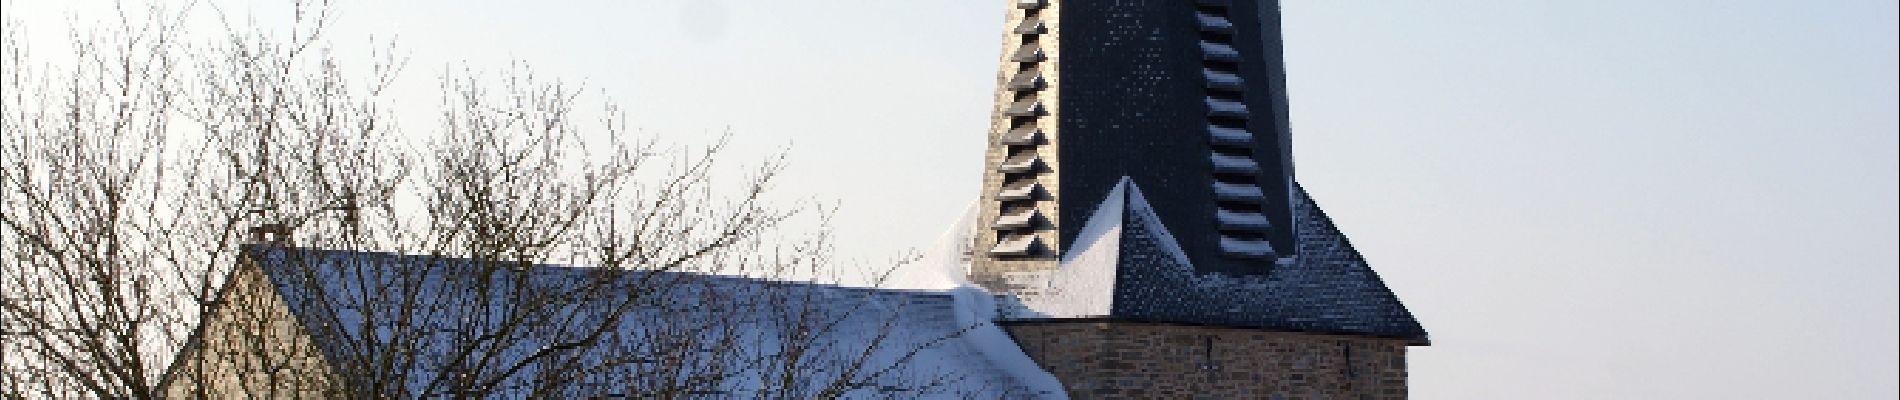 POI Marchin - Eglise de Grand Marchin - Photo